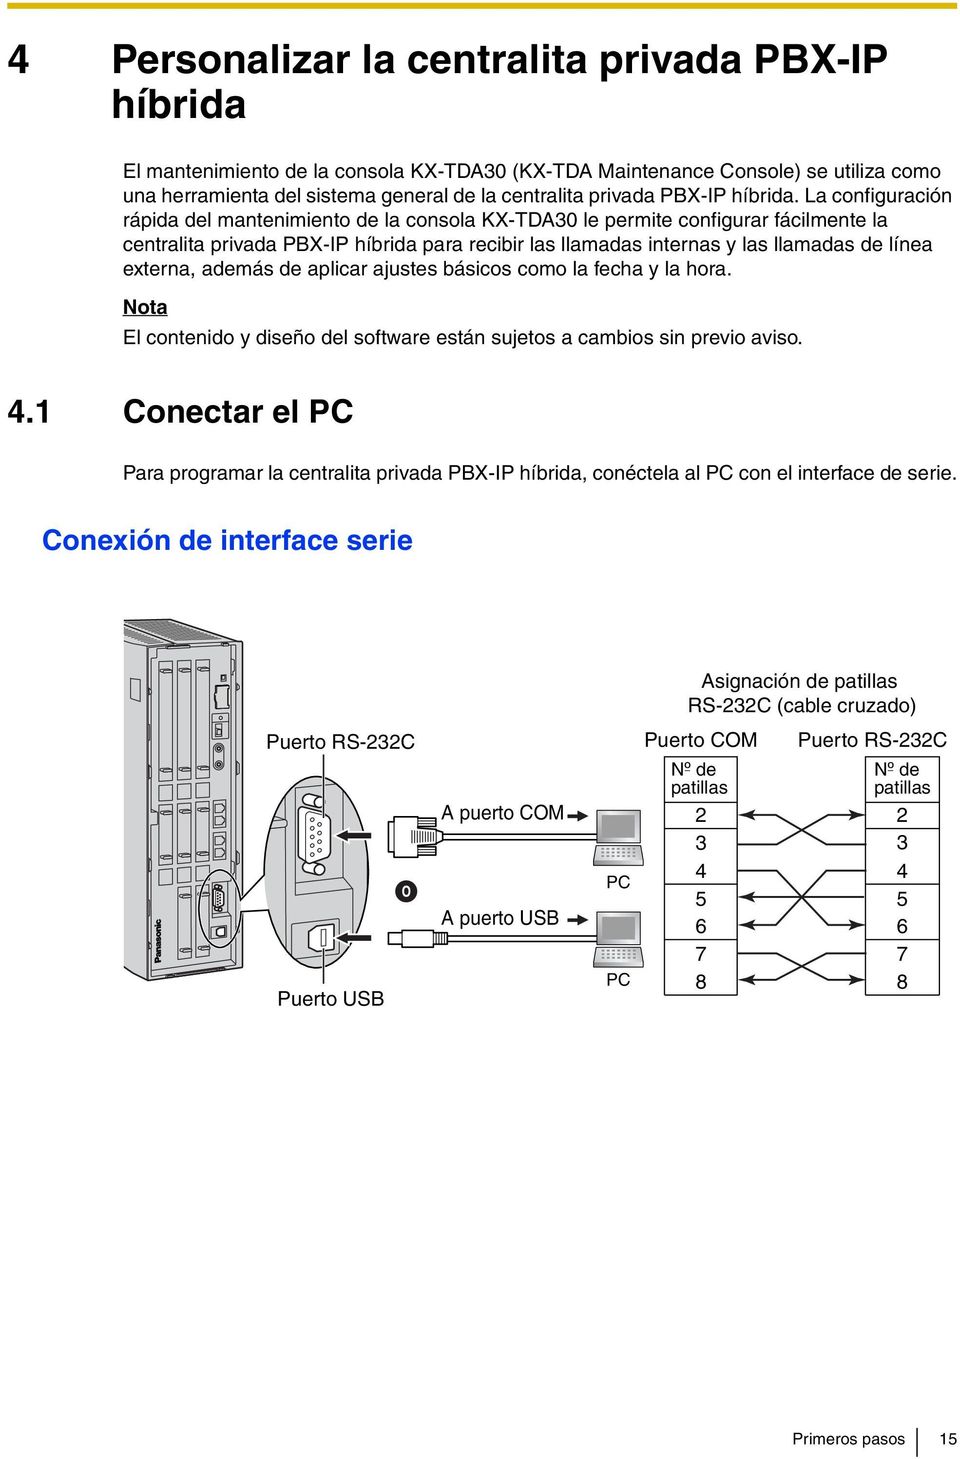 La configuración rápida del mantenimiento de la consola KX-TDA30 le permite configurar fácilmente la centralita privada PBX-IP híbrida para recibir las llamadas internas y las llamadas de línea